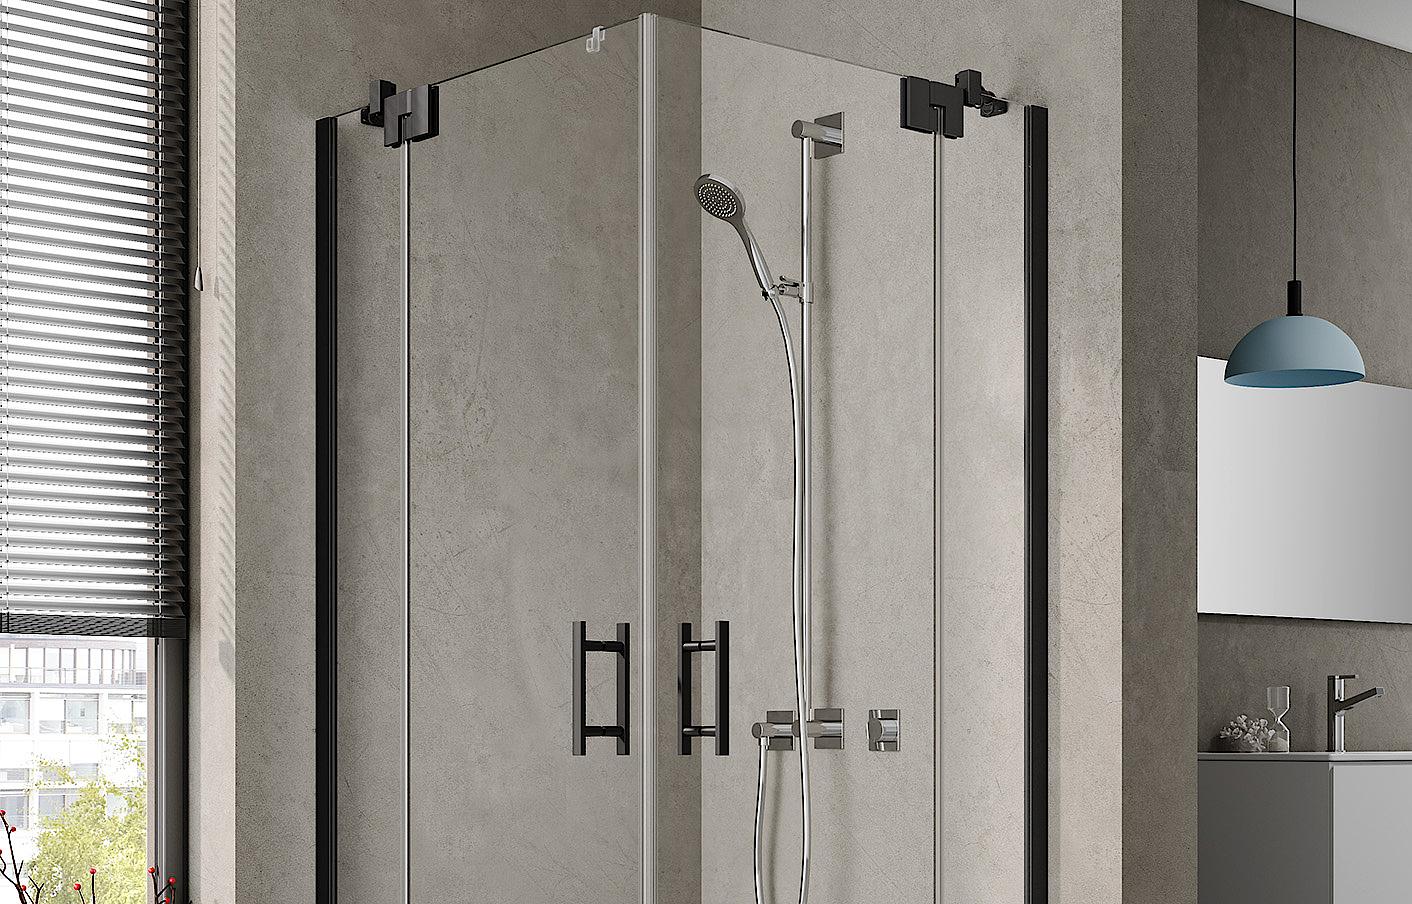 Zawiasowa kabina prysznicowa Kermi FILIA XP, wejście narożne 2-częściowe (drzwi wahadłowe z polami stałymi) – 1 połowa